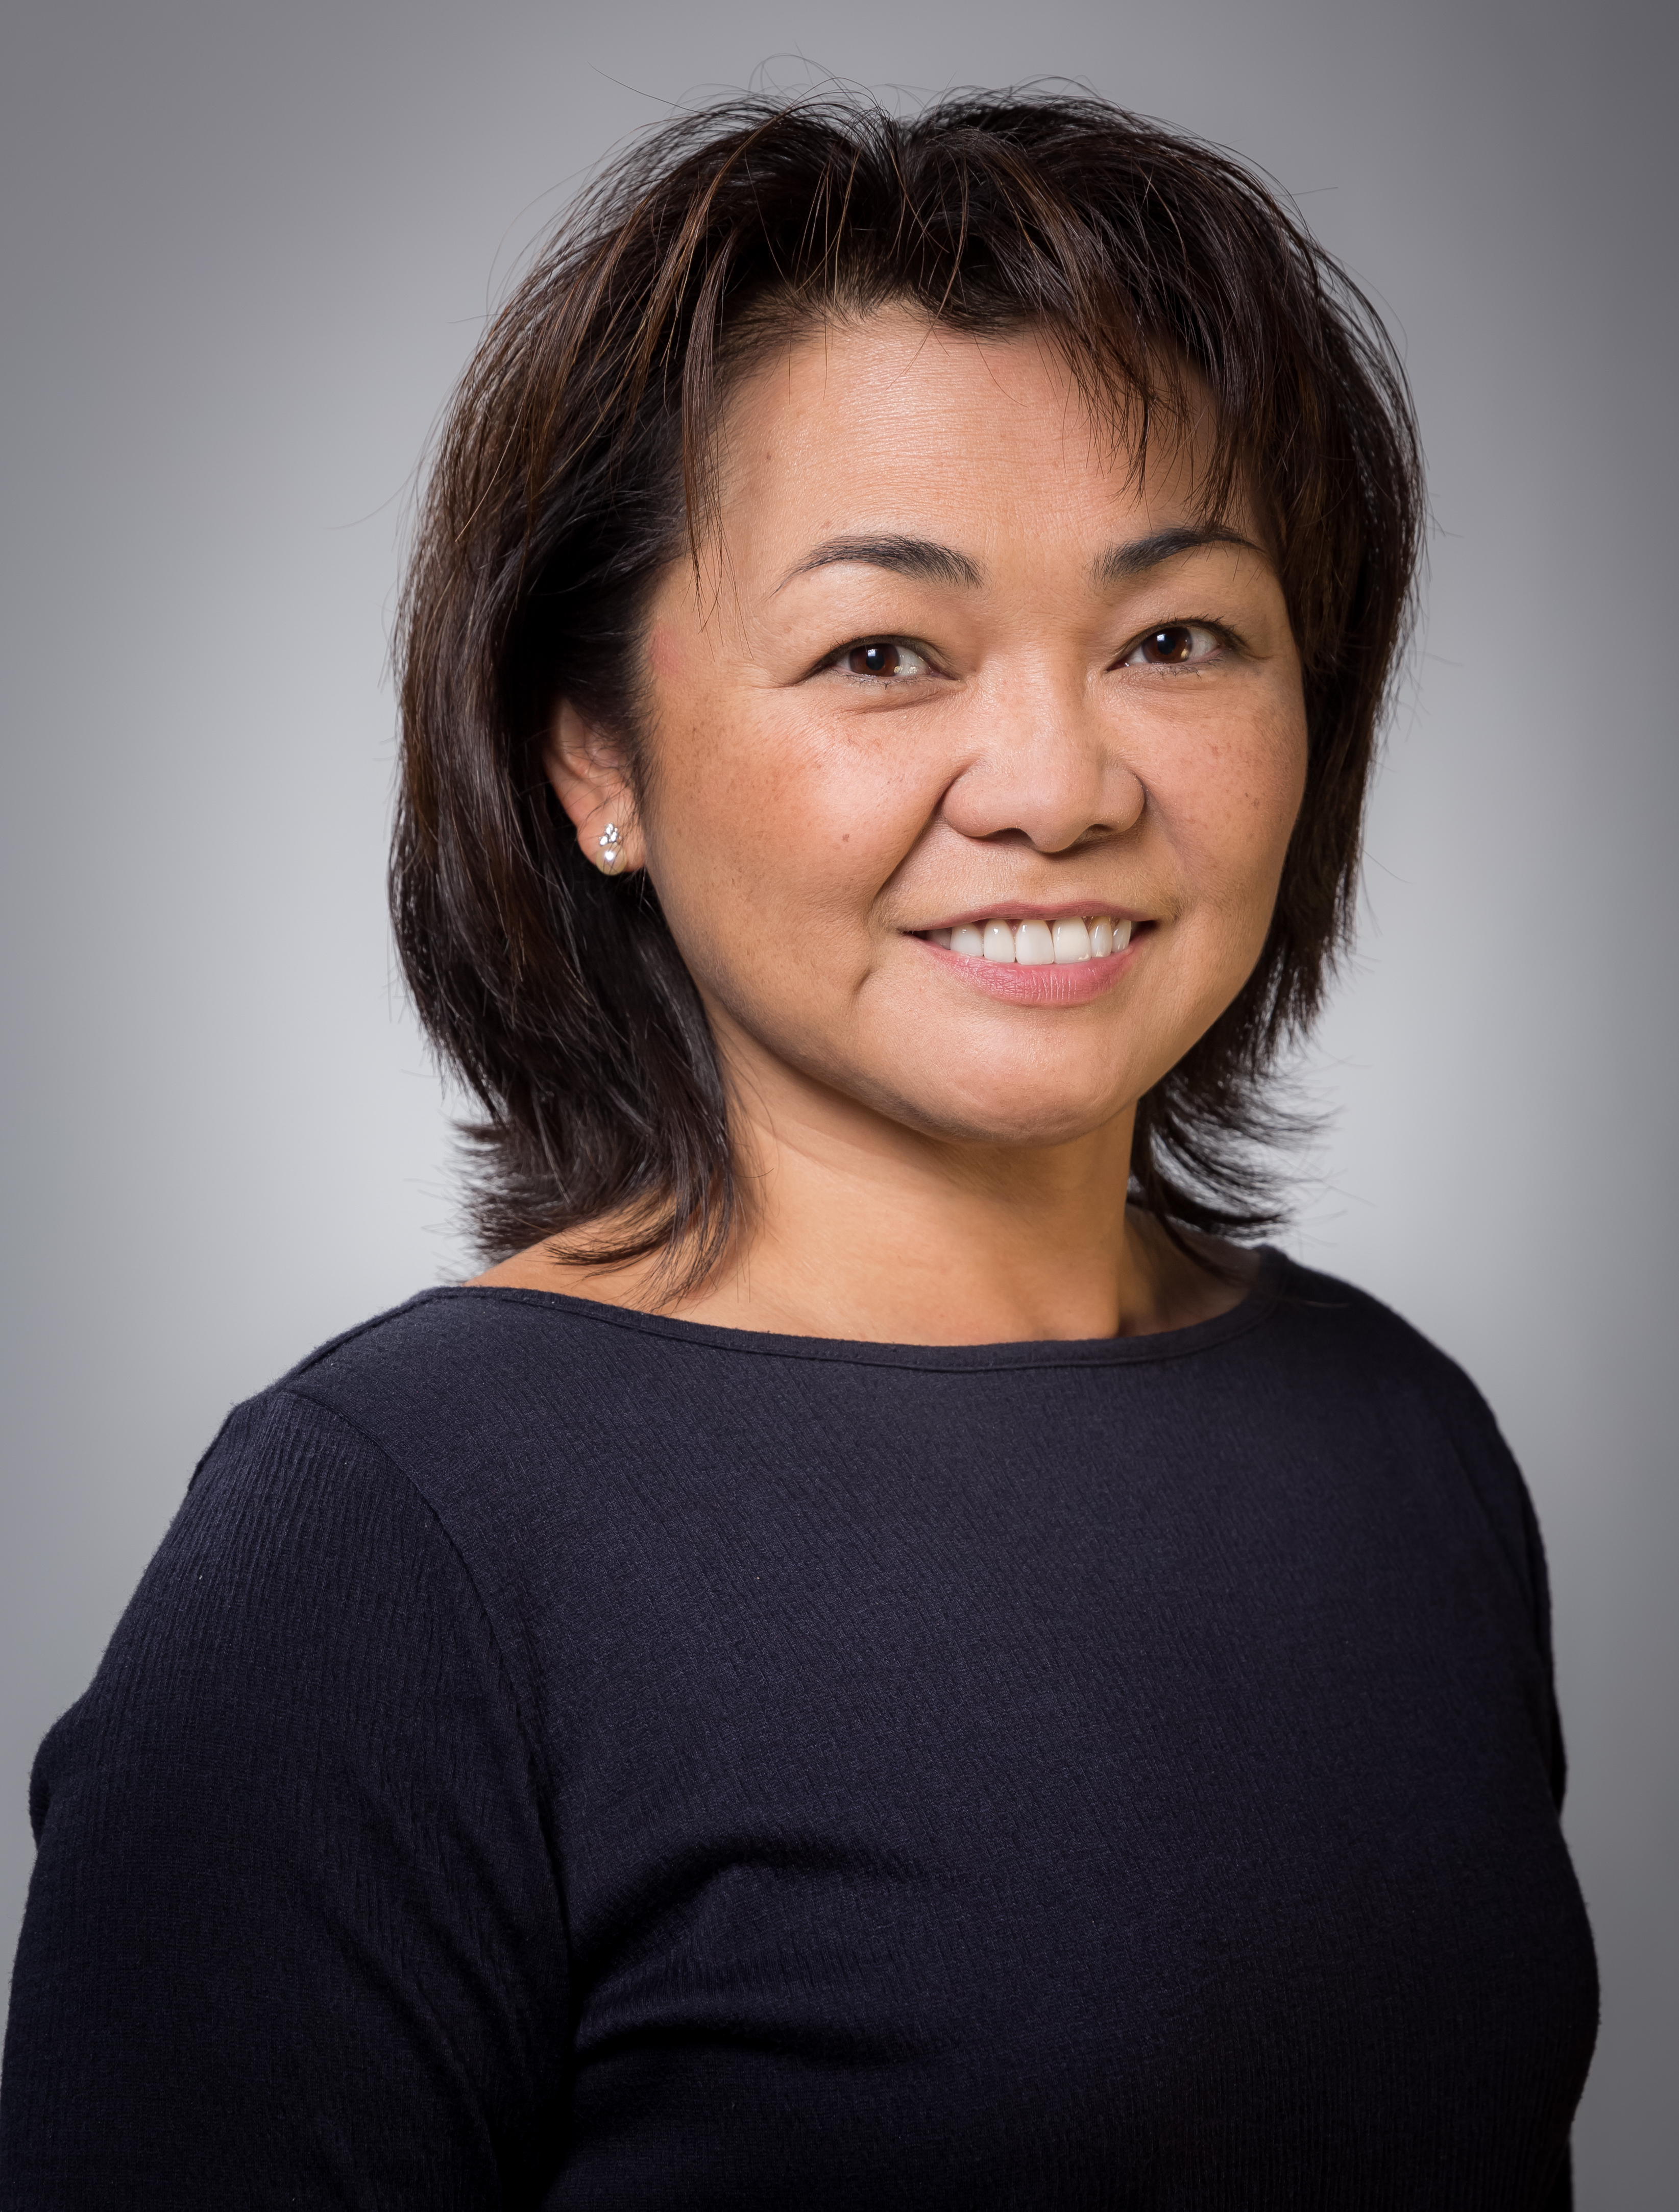 Alberta Kong, vicepresidente ad interim della ricerca pediatrica